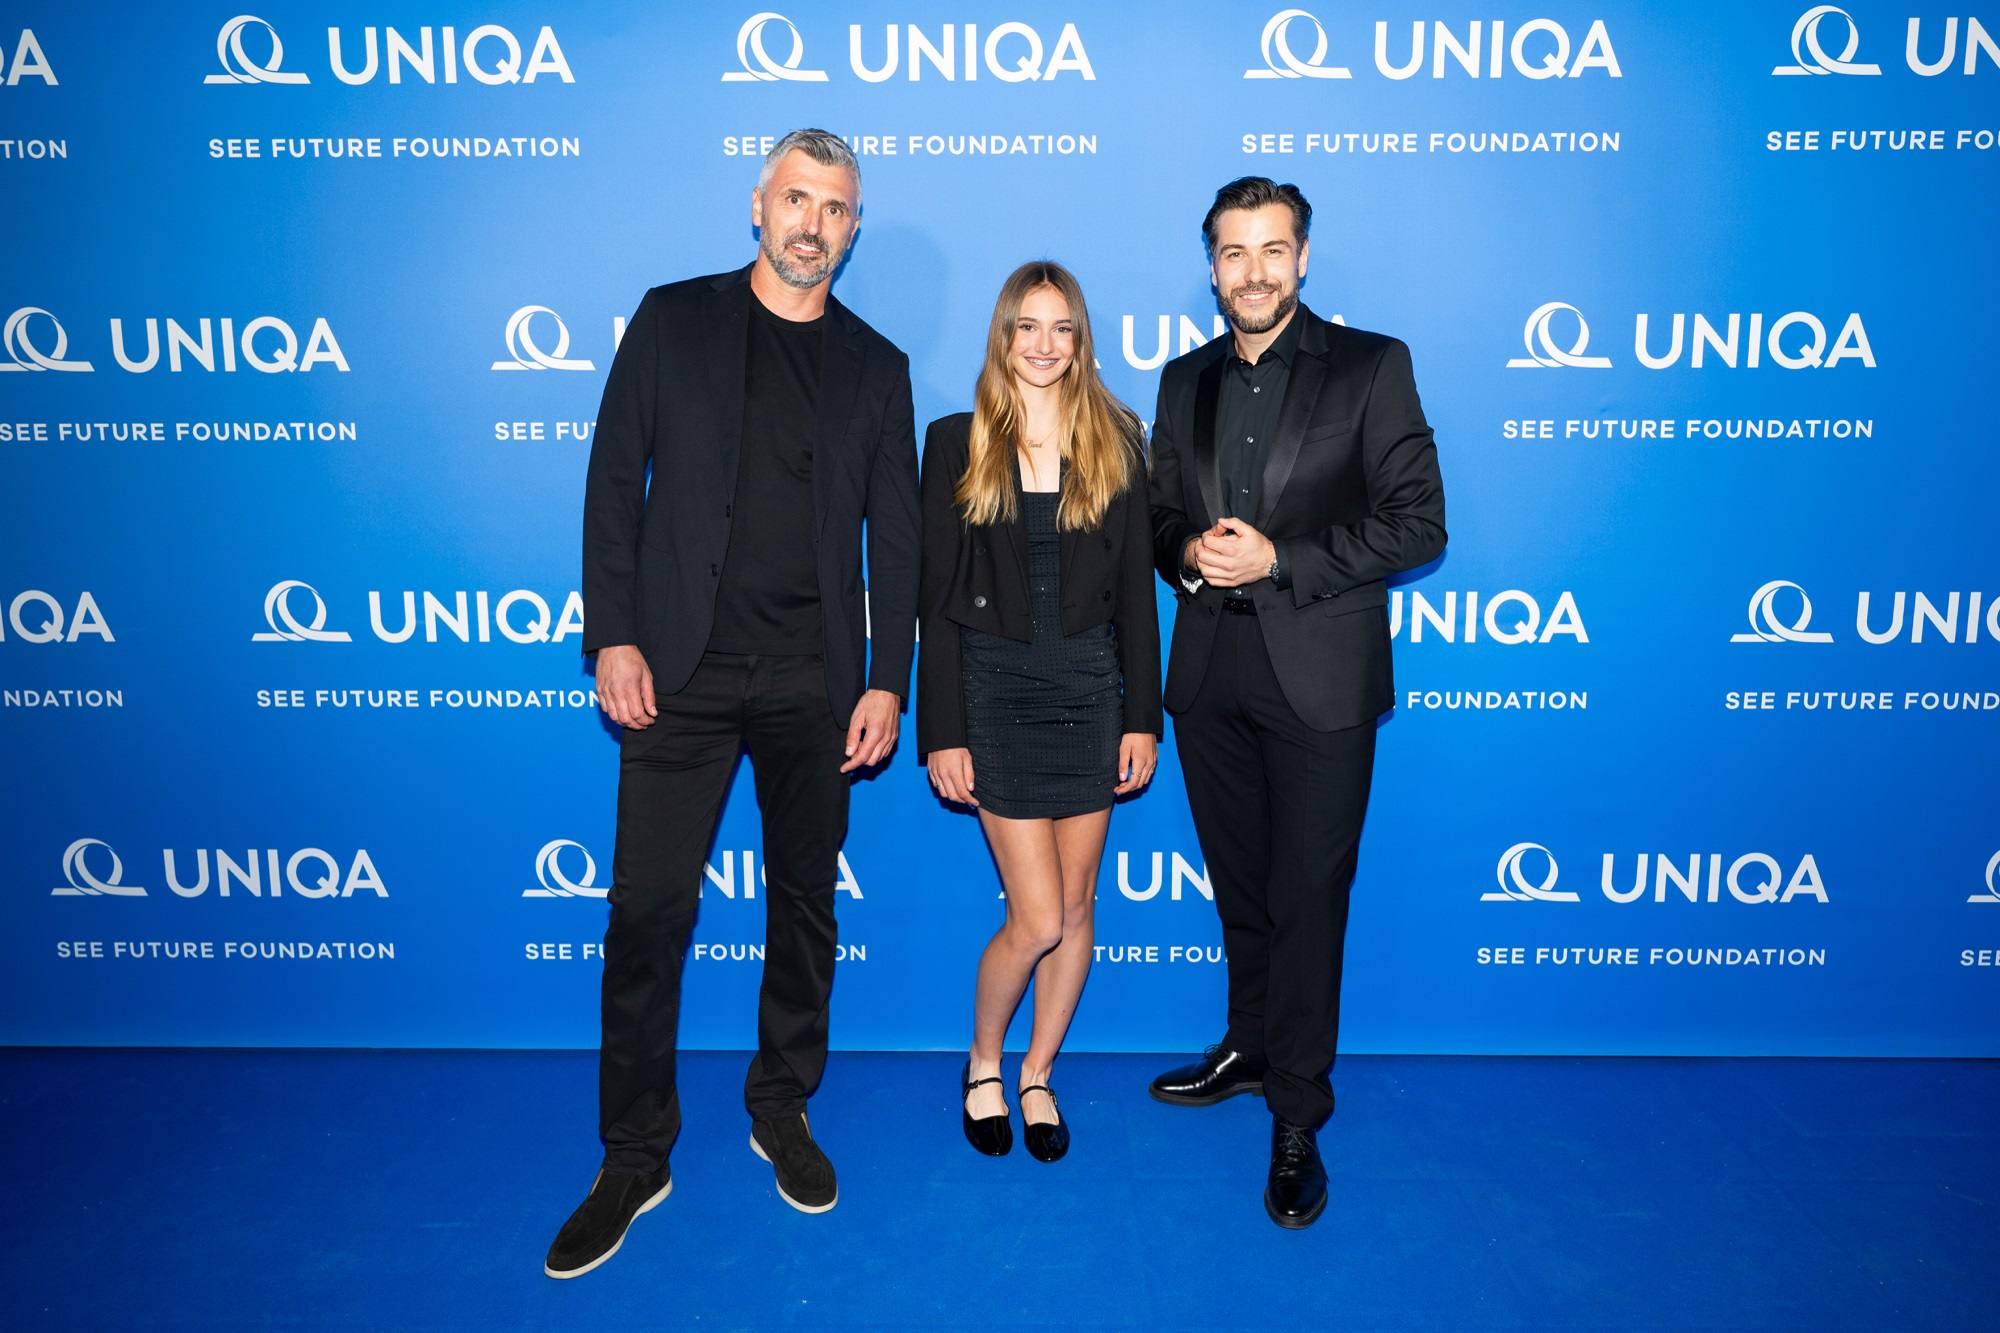 Goran Ivanišević și Luna Vujović au lansat noua fundație UNIQA SEE Future – sprijin pentru un viitor mai bun